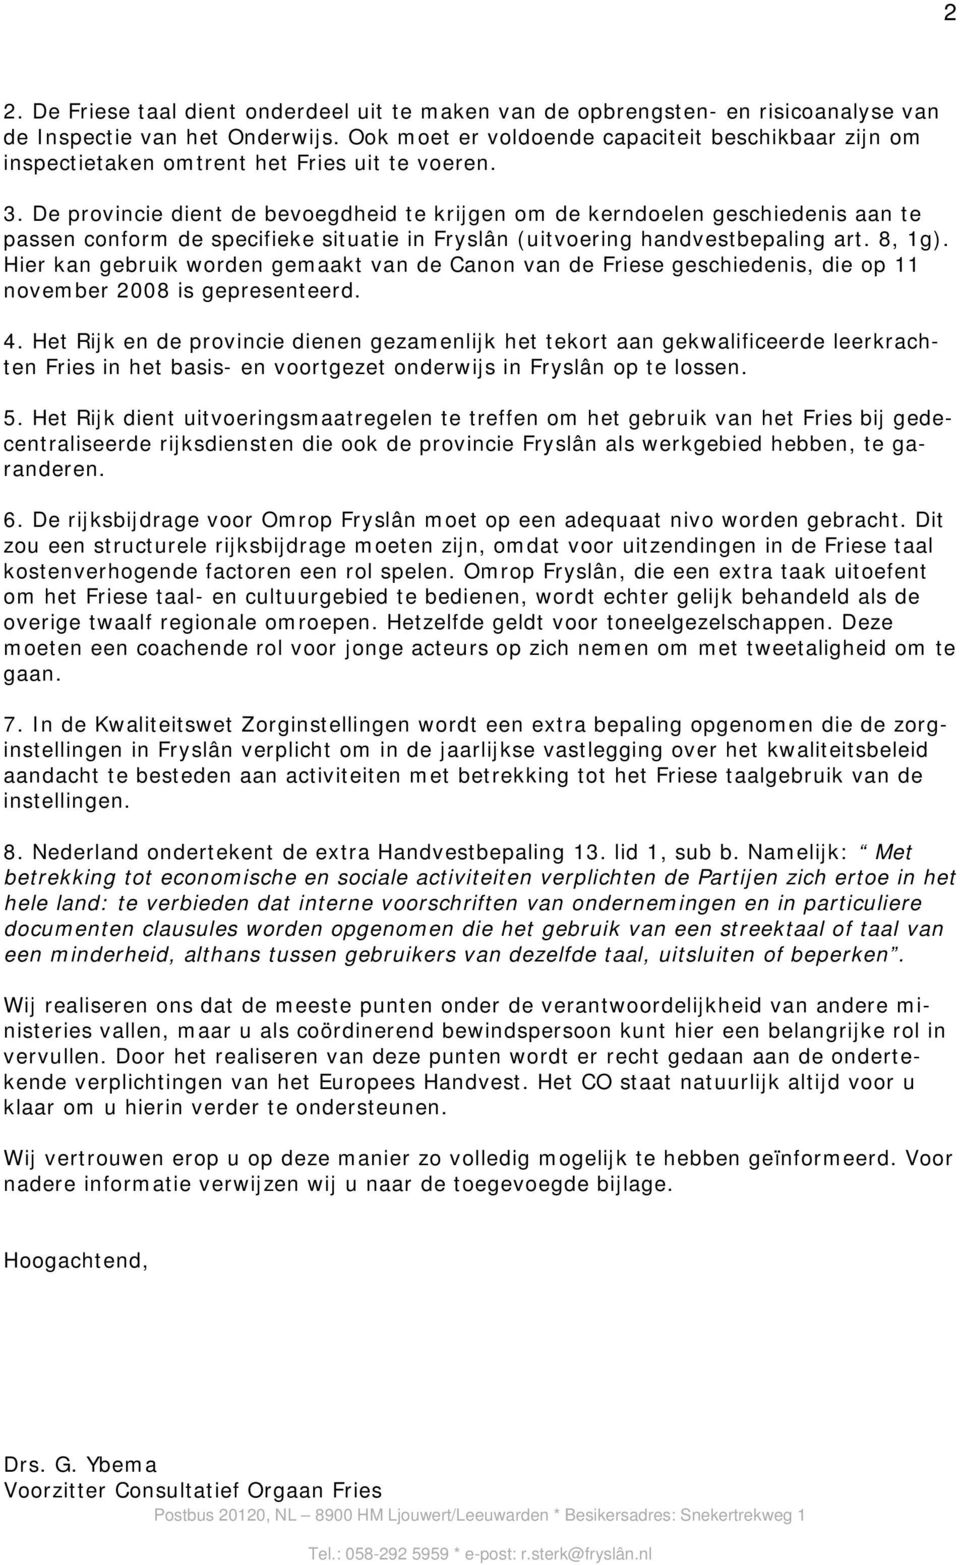 De provincie dient de bevoegdheid te krijgen om de kerndoelen geschiedenis aan te passen conform de specifieke situatie in Fryslân (uitvoering handvestbepaling art. 8, 1g).